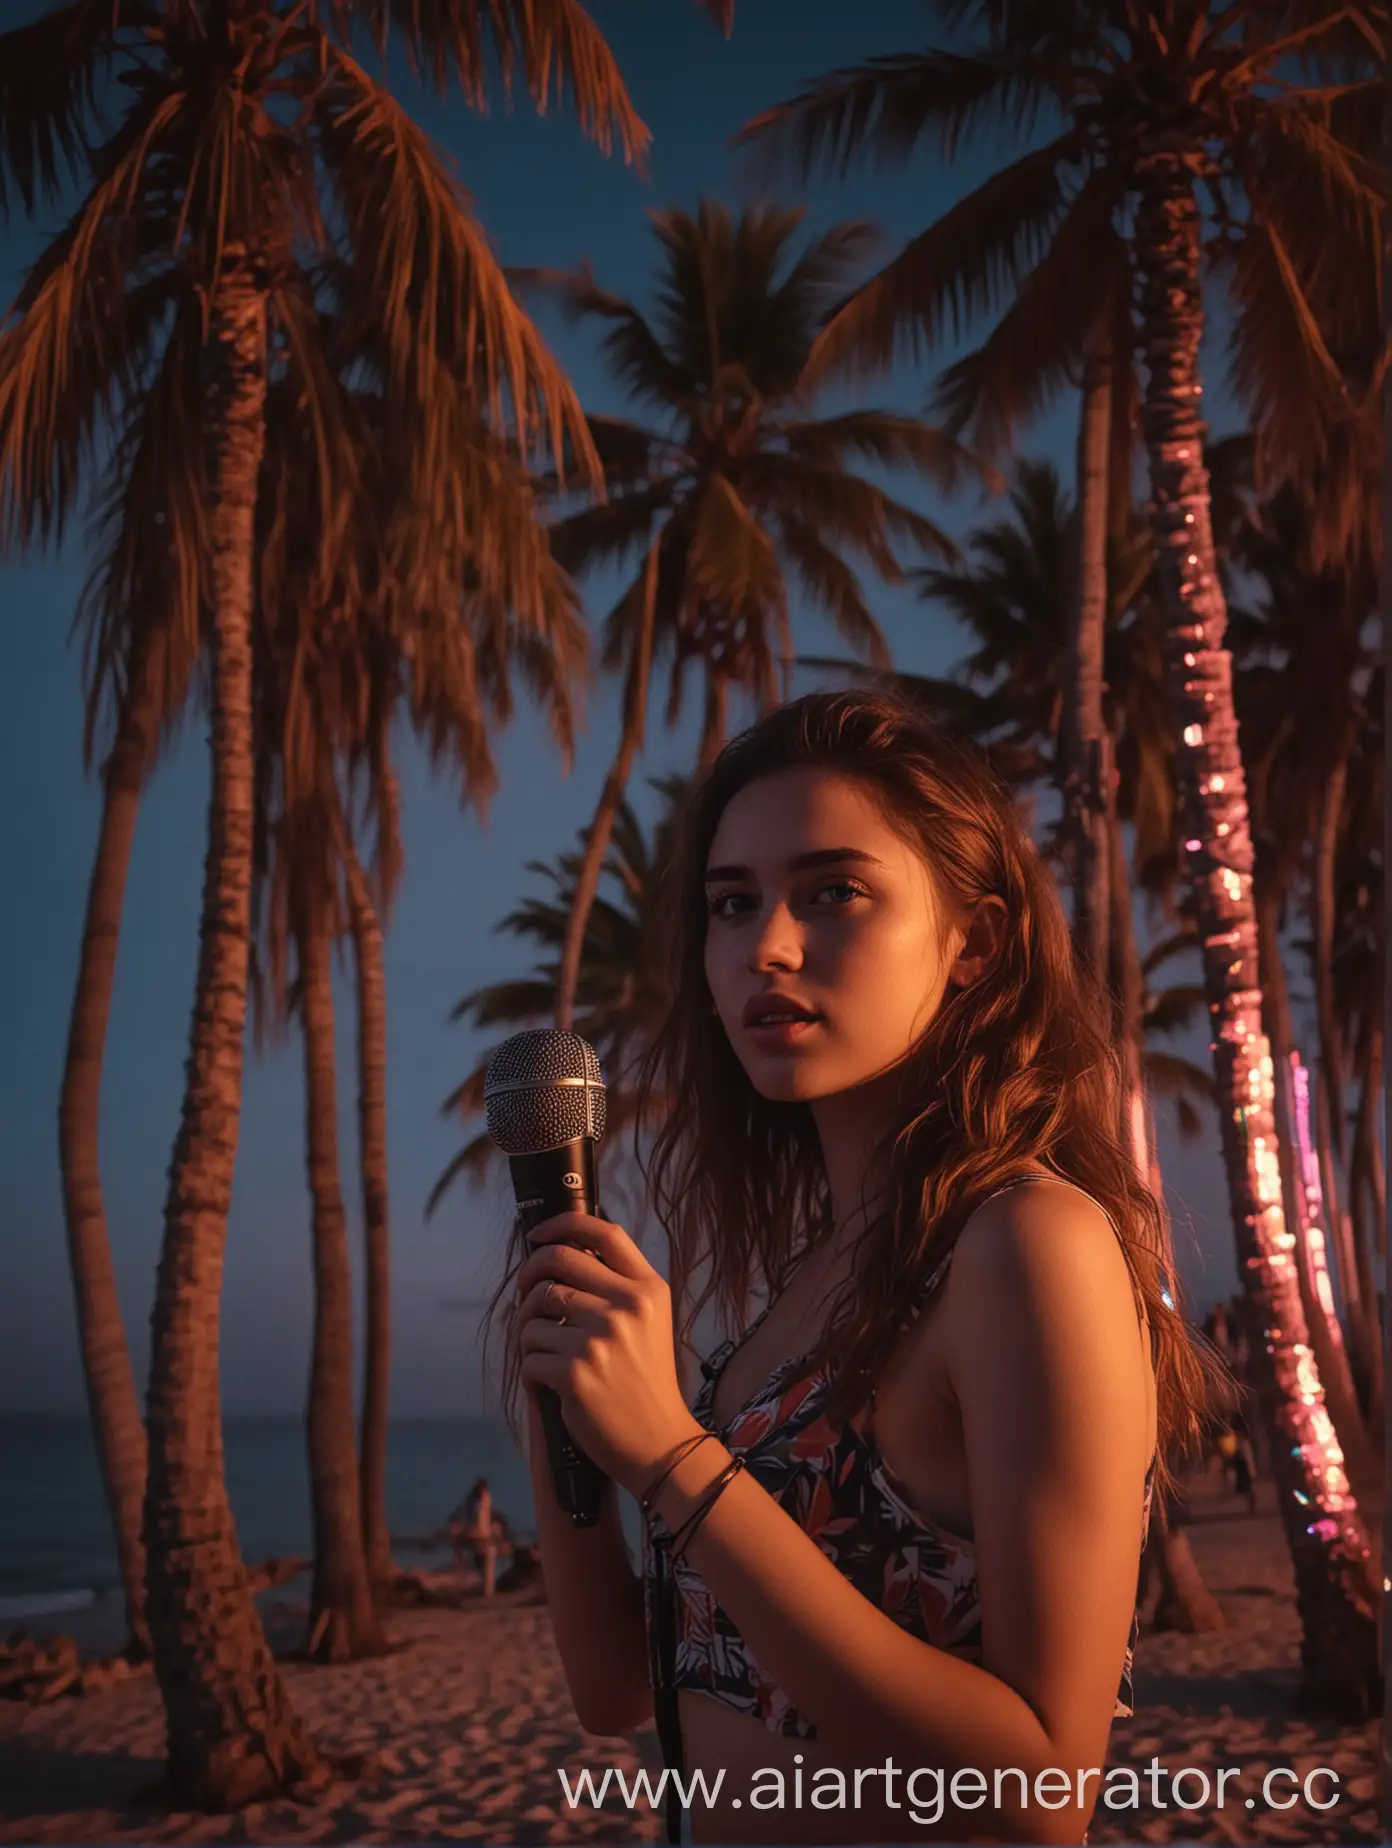 Девушка с правой части кадра с микрофоном вечером на пляже на фоне пальм и моря в лучах неона, в левой части кадра пальмы